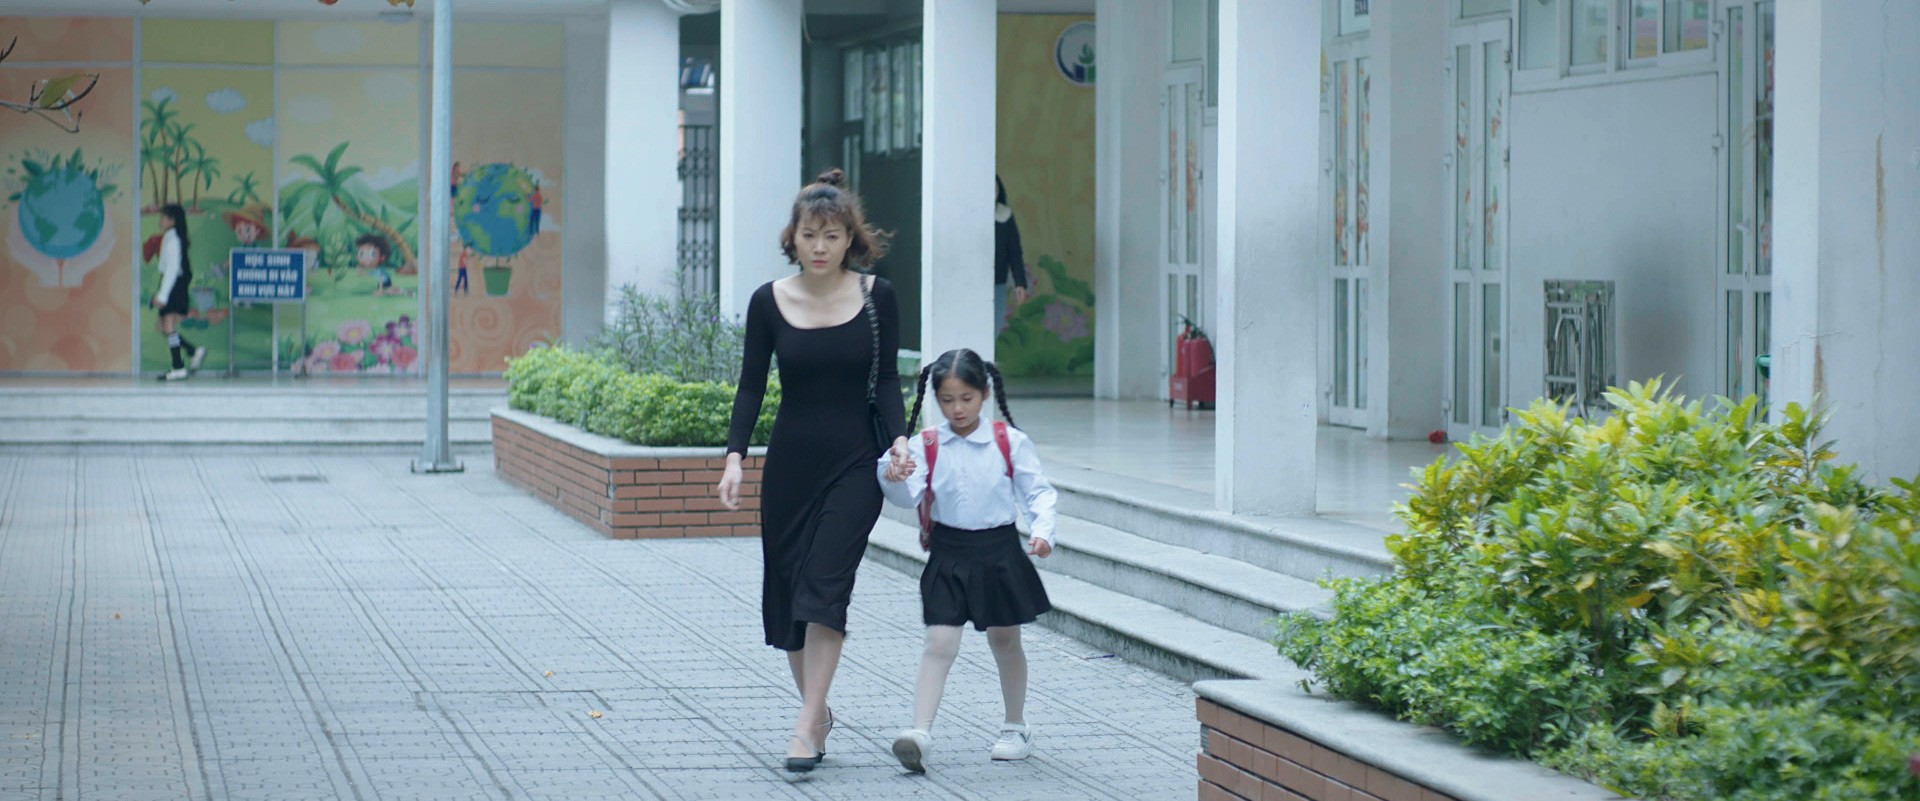 Thanh Hương trong vai Khanh của phim "Người một nhà" lên sóng tối thứ 5, 6 hàng tuần trên VTV3 từ ngày 28/3